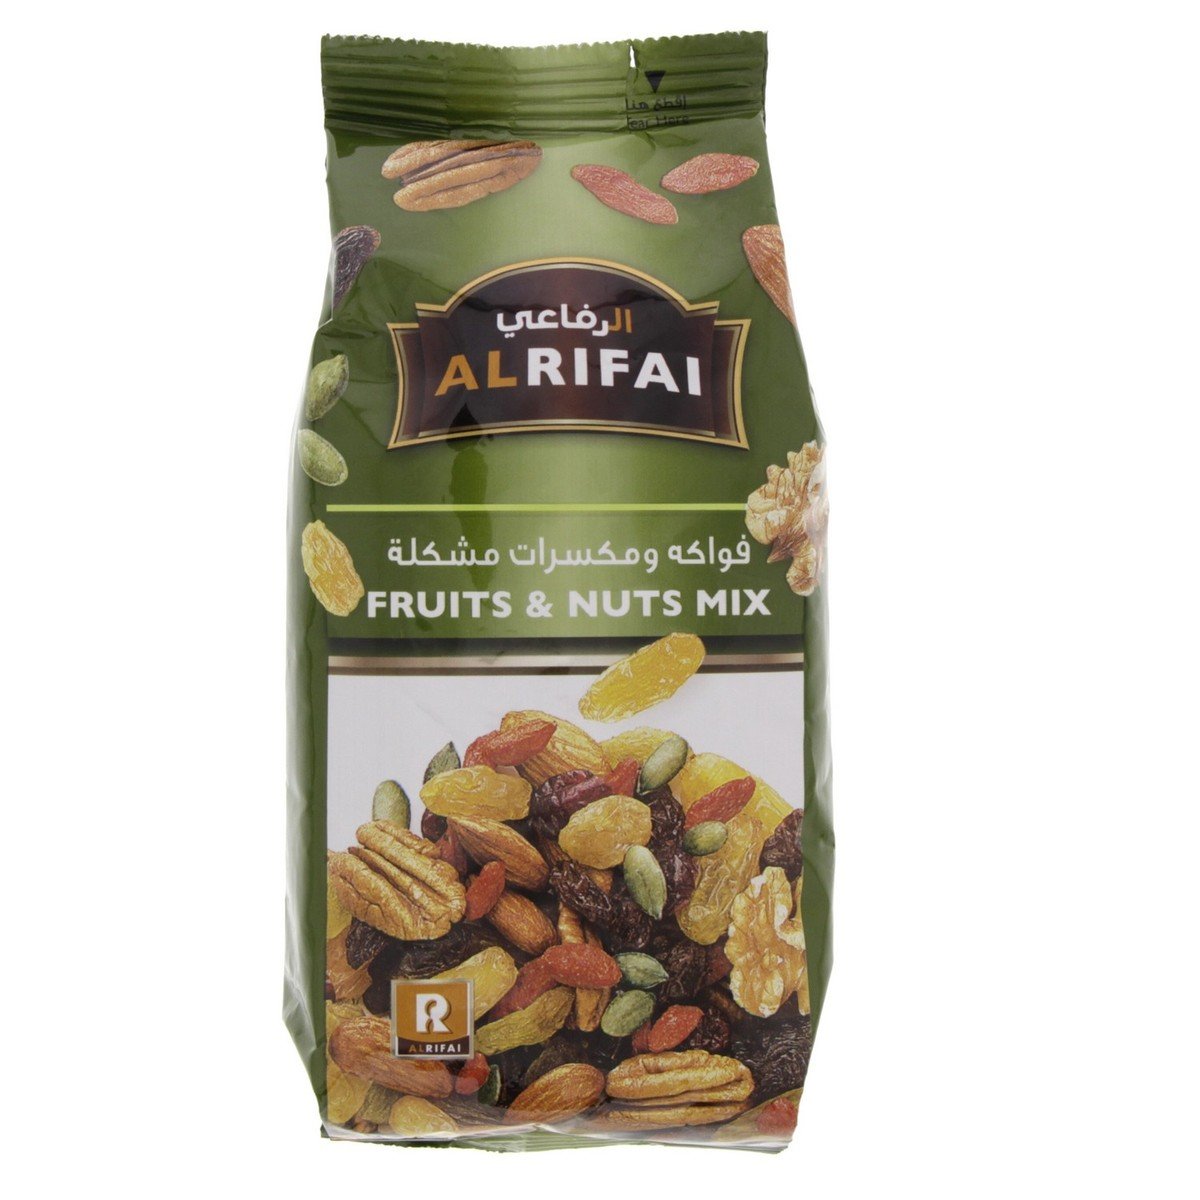 Al Rifai Fruits & Nuts Mix 200g